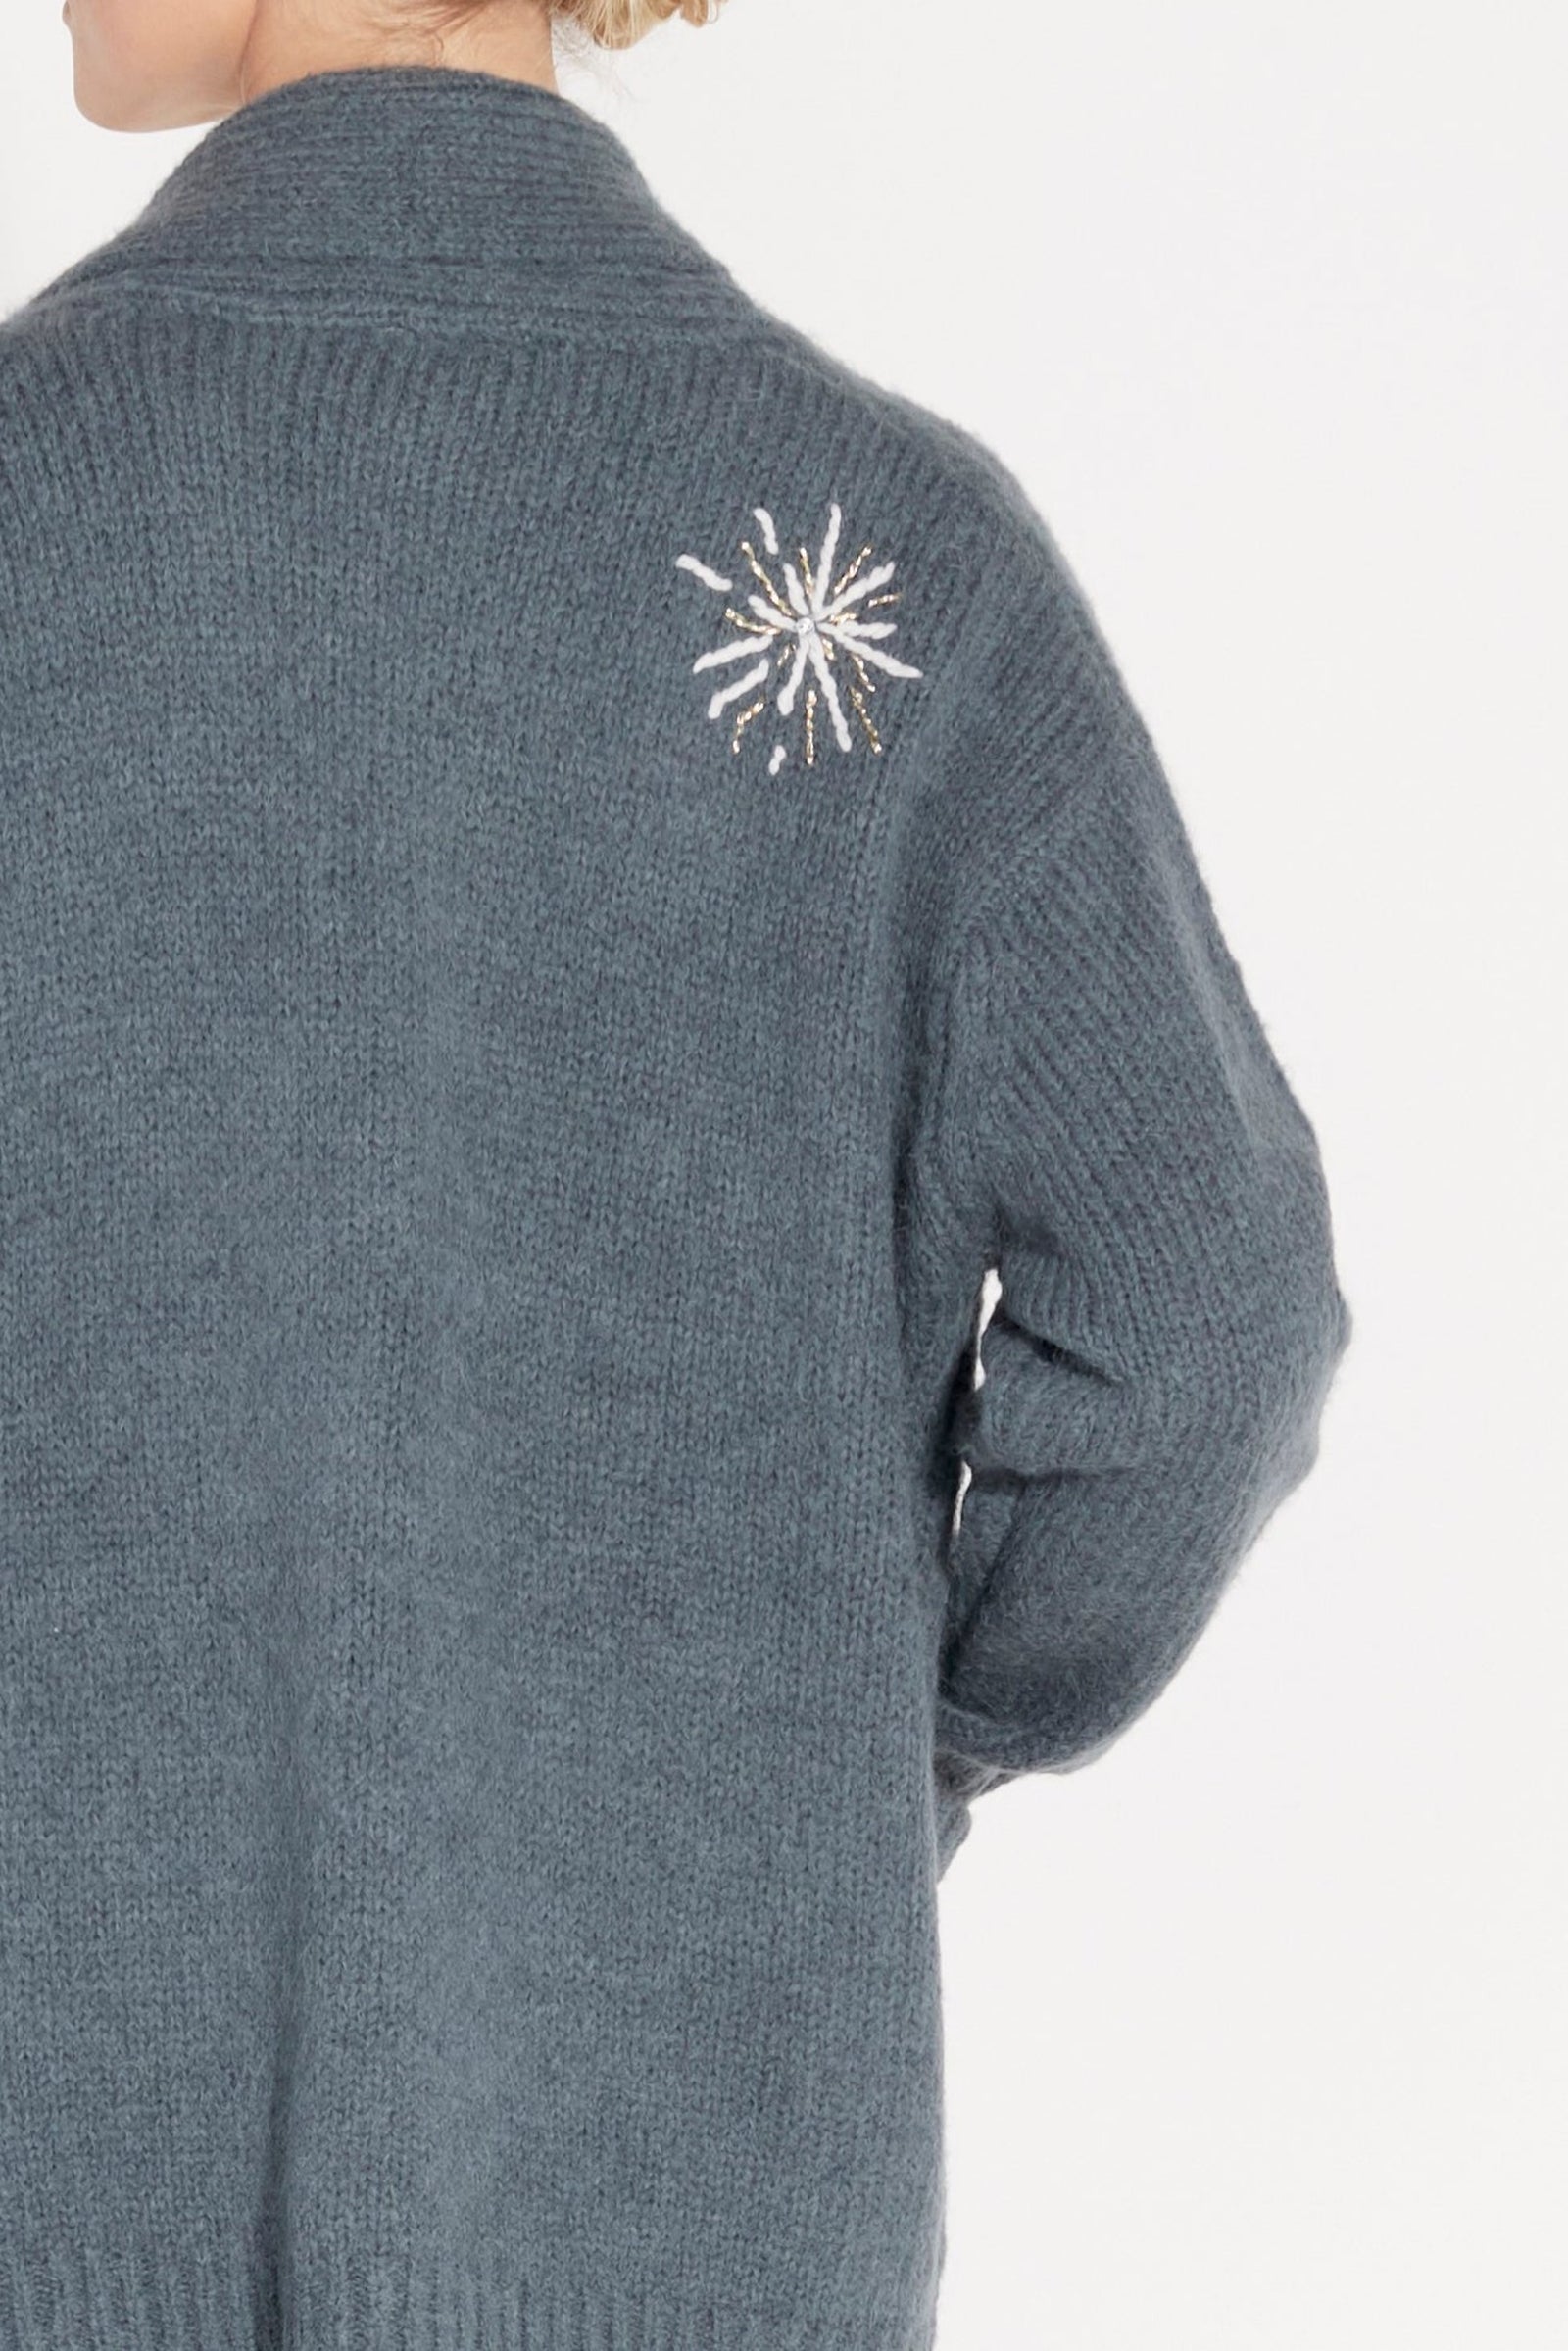 Storm Tarot  Margaret Cardigan Sweater Back Close-Up View